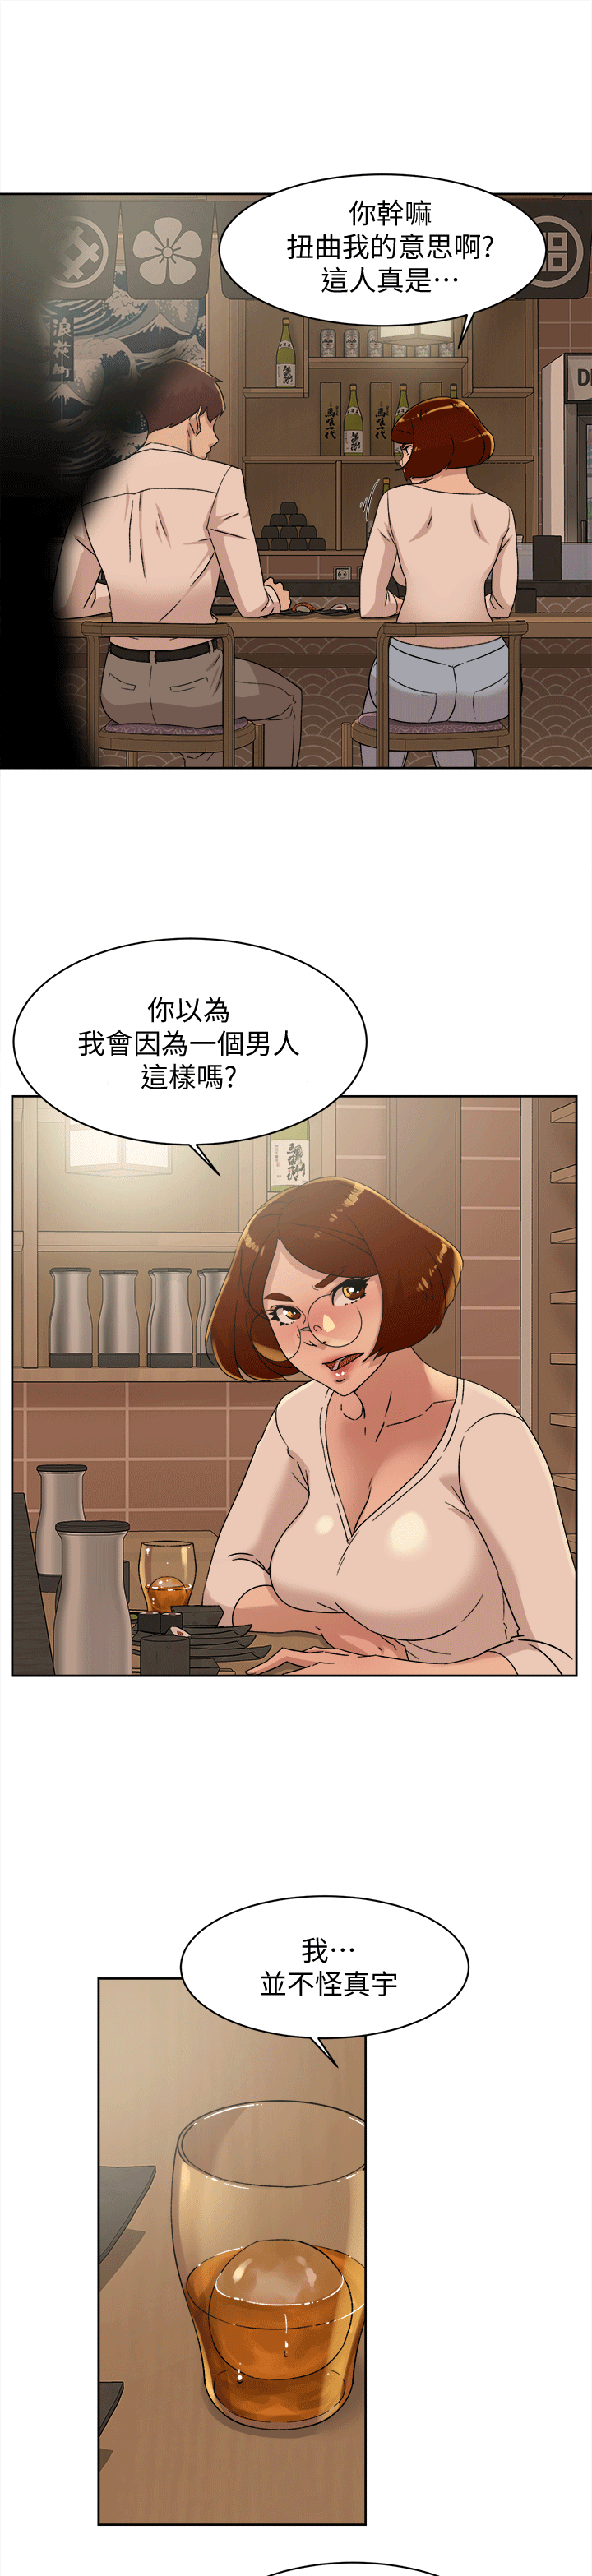 韩国污漫画 她的高跟鞋(無刪減) 第78话-用身体确认的团队默契 3